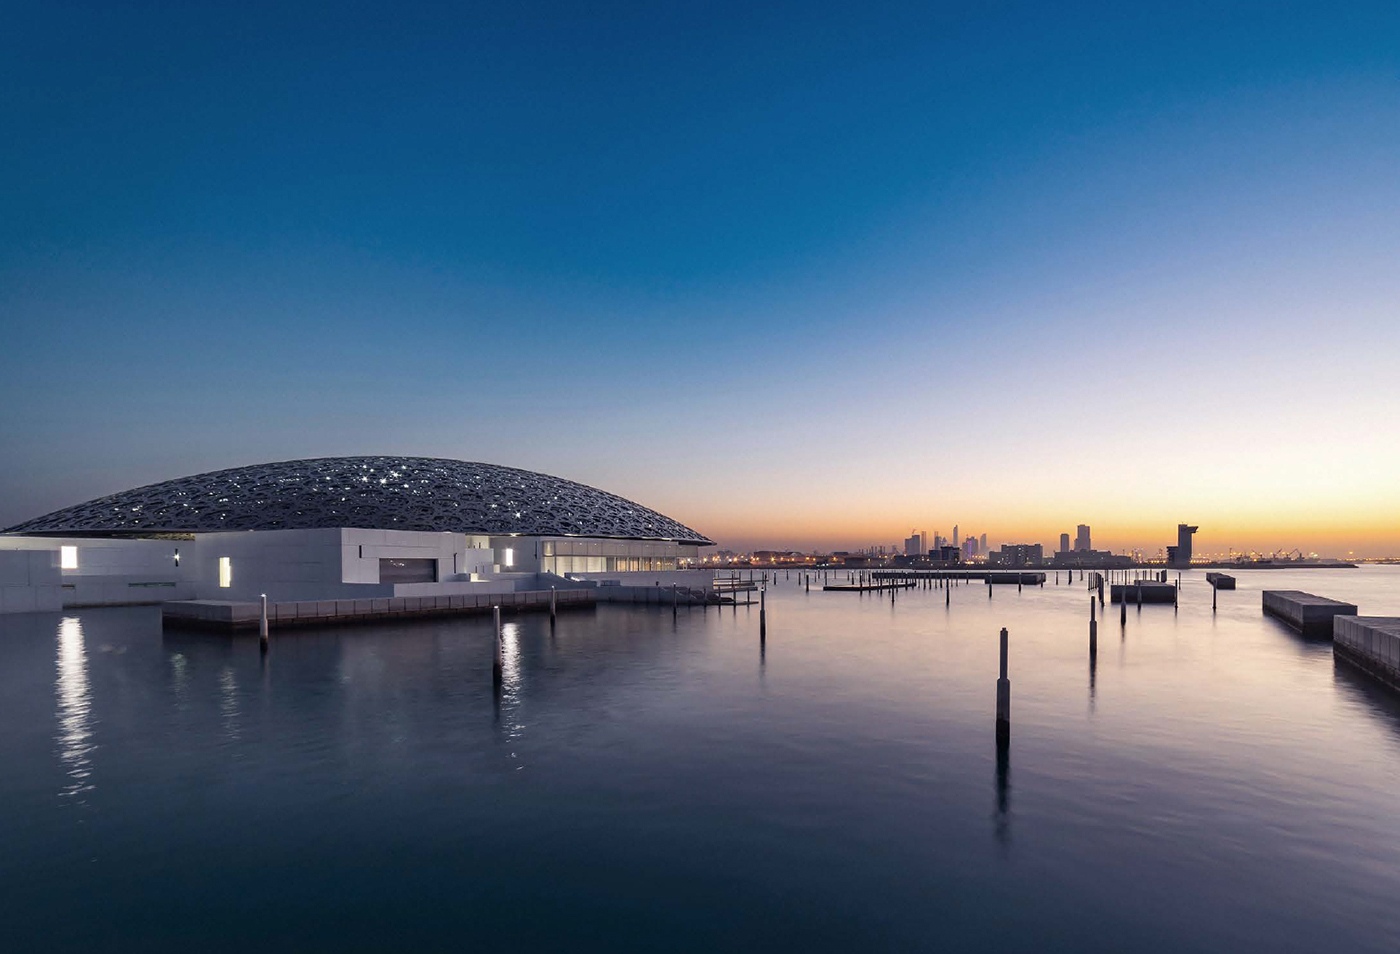 Owns land on the most prestigious island in Abu Dhabi.